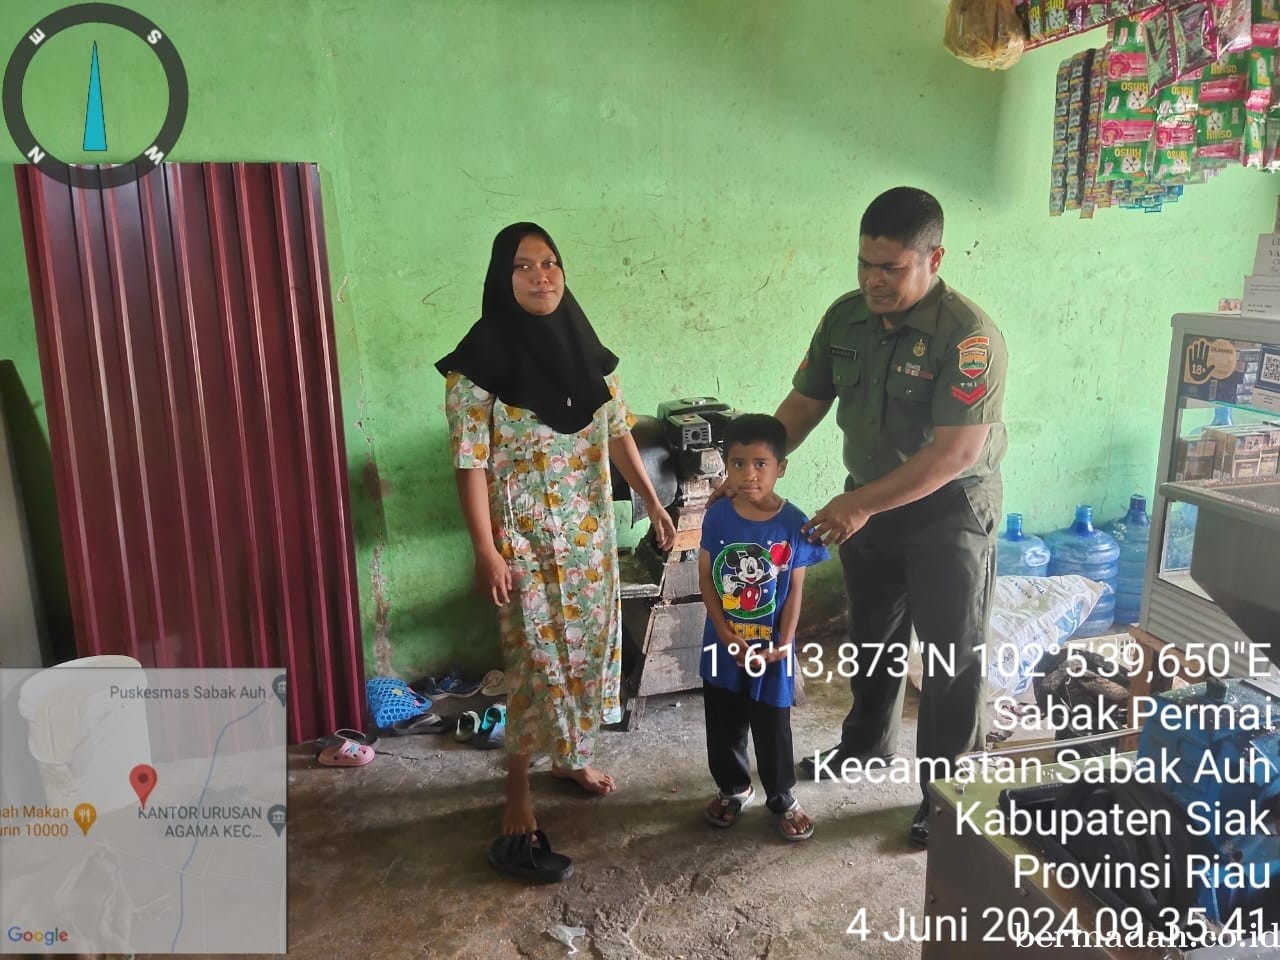 Selasa 4 Juni, Anggota Koramil 06/Pwk Sabak Auh Pengecekan anak stunting